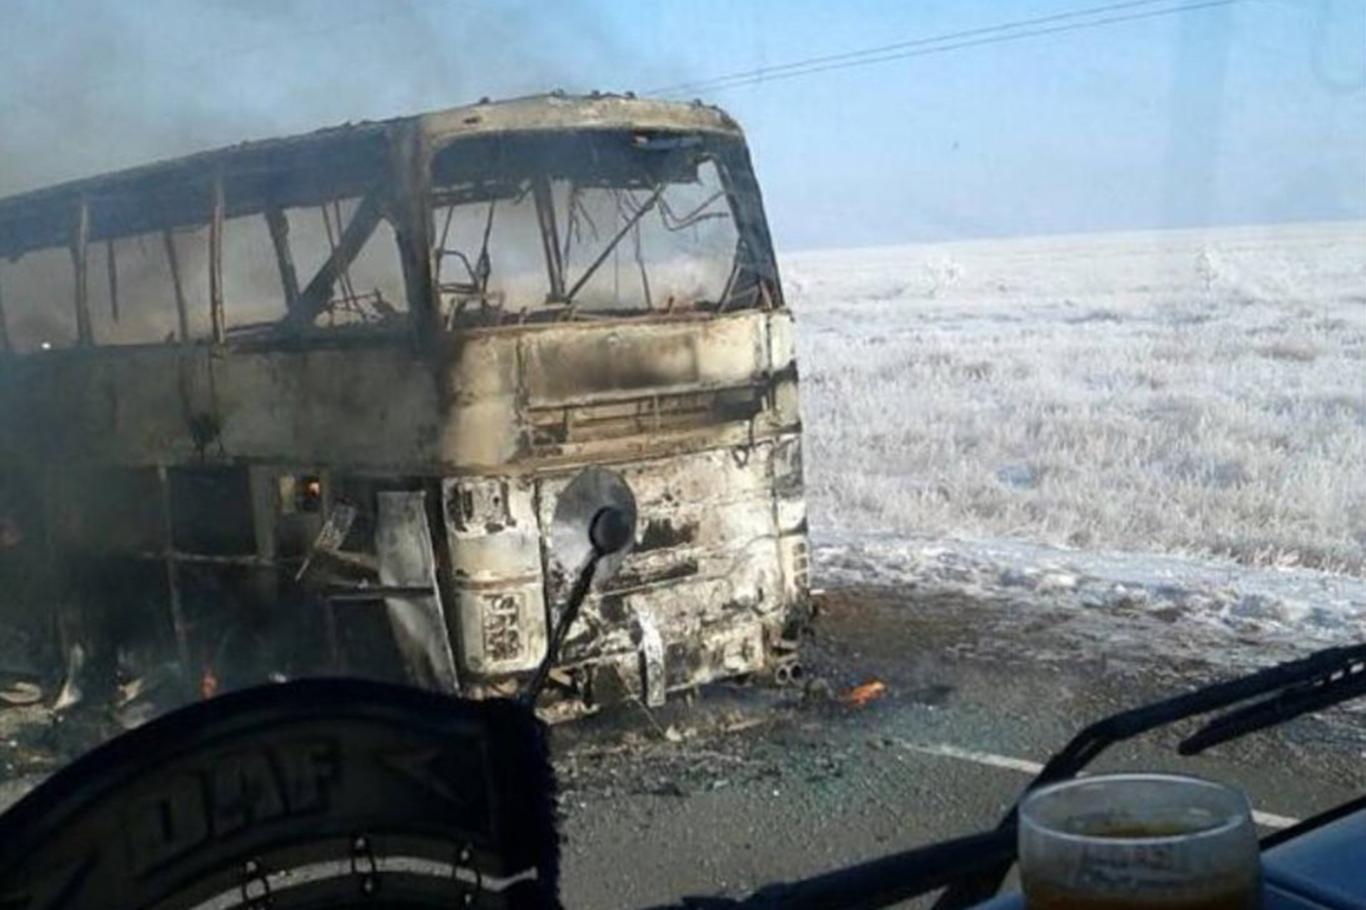 Kazakistan'da yolcu otobüsü yandı: 52 ölü